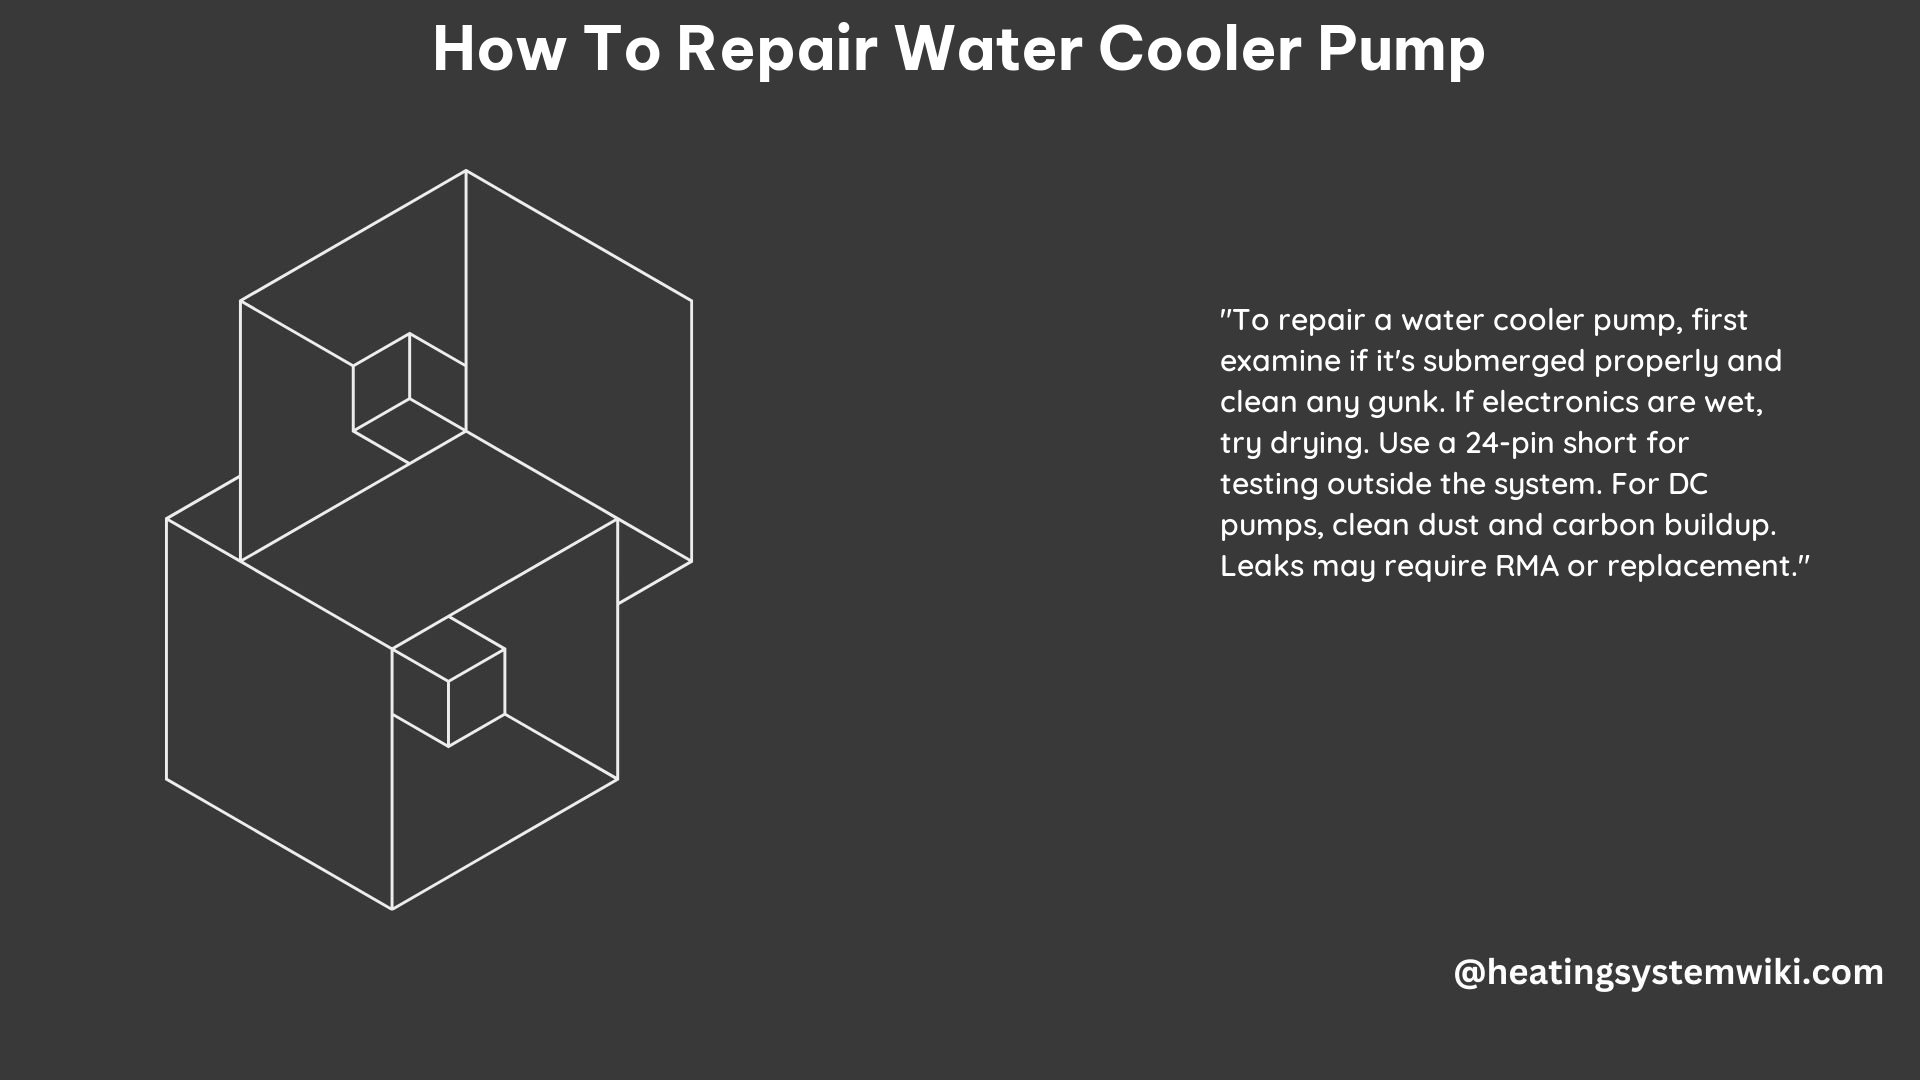 How to Repair Water Cooler Pump